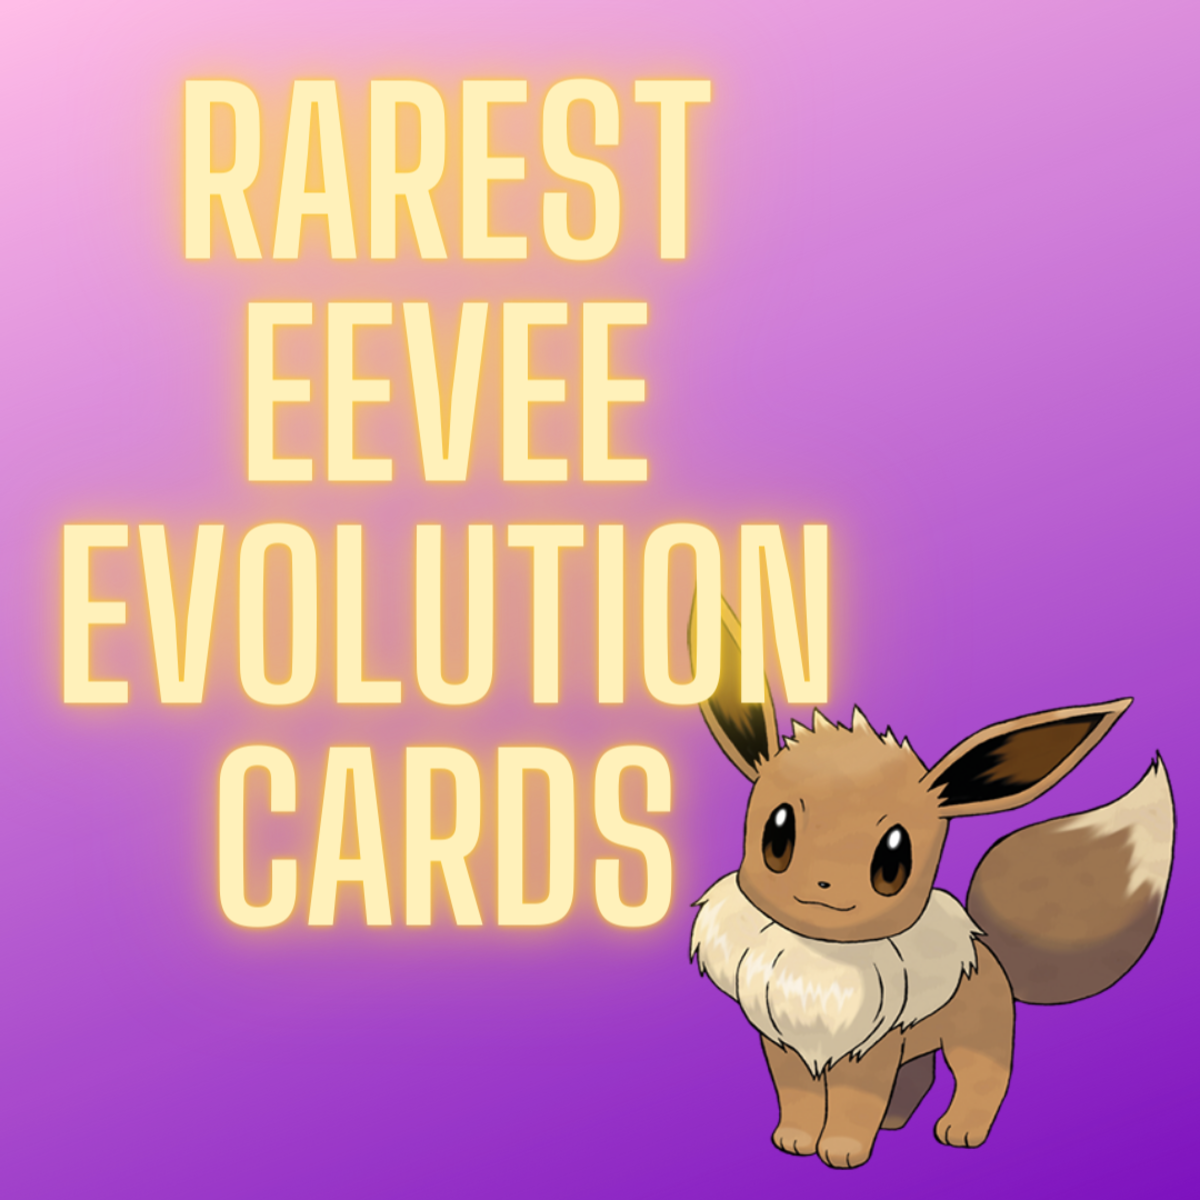 Pokémon TCG: 8 of the Rarest Eevee Evolution Cards Ever Printed